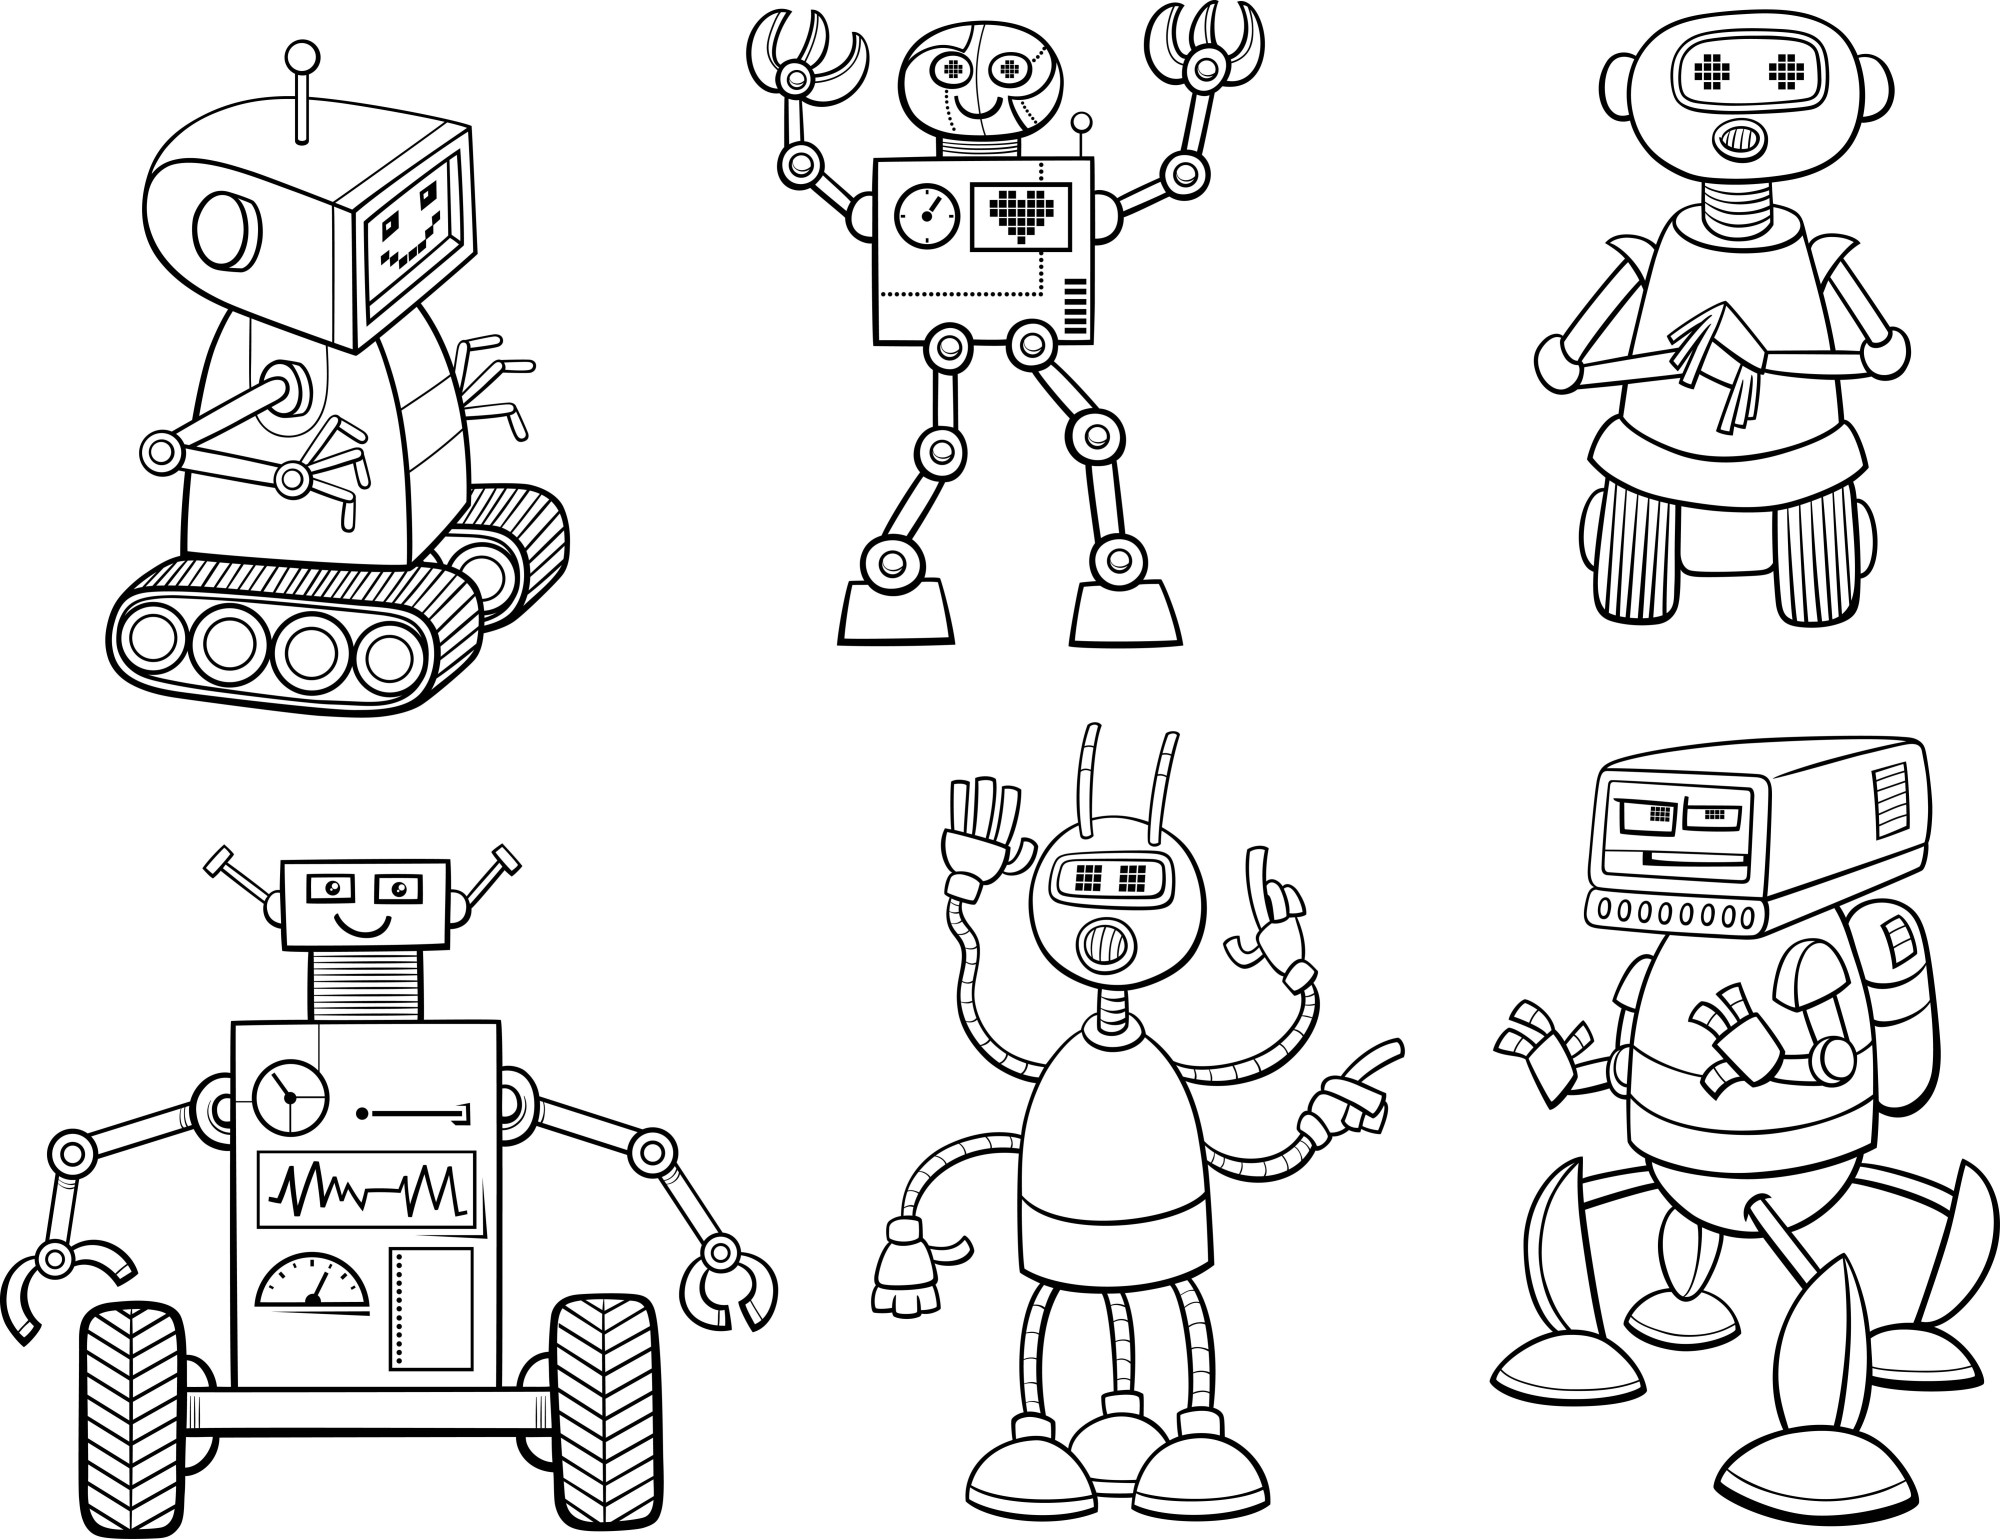 Раскраска для детей: мультяшные роботы «Дроиды»